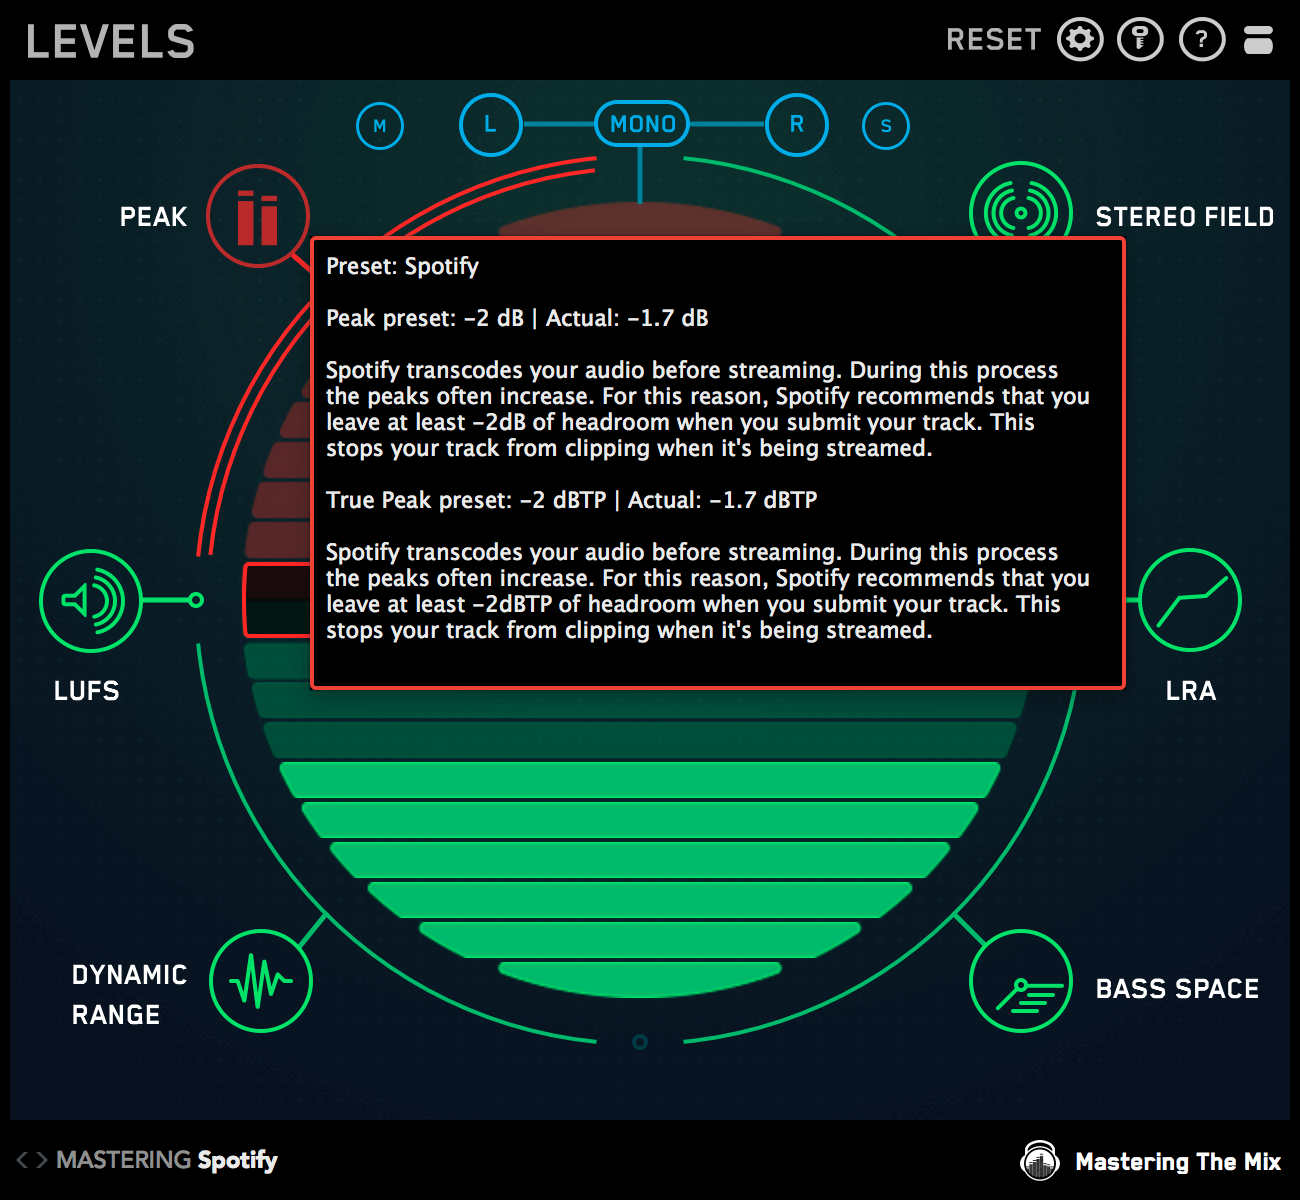 Levels update